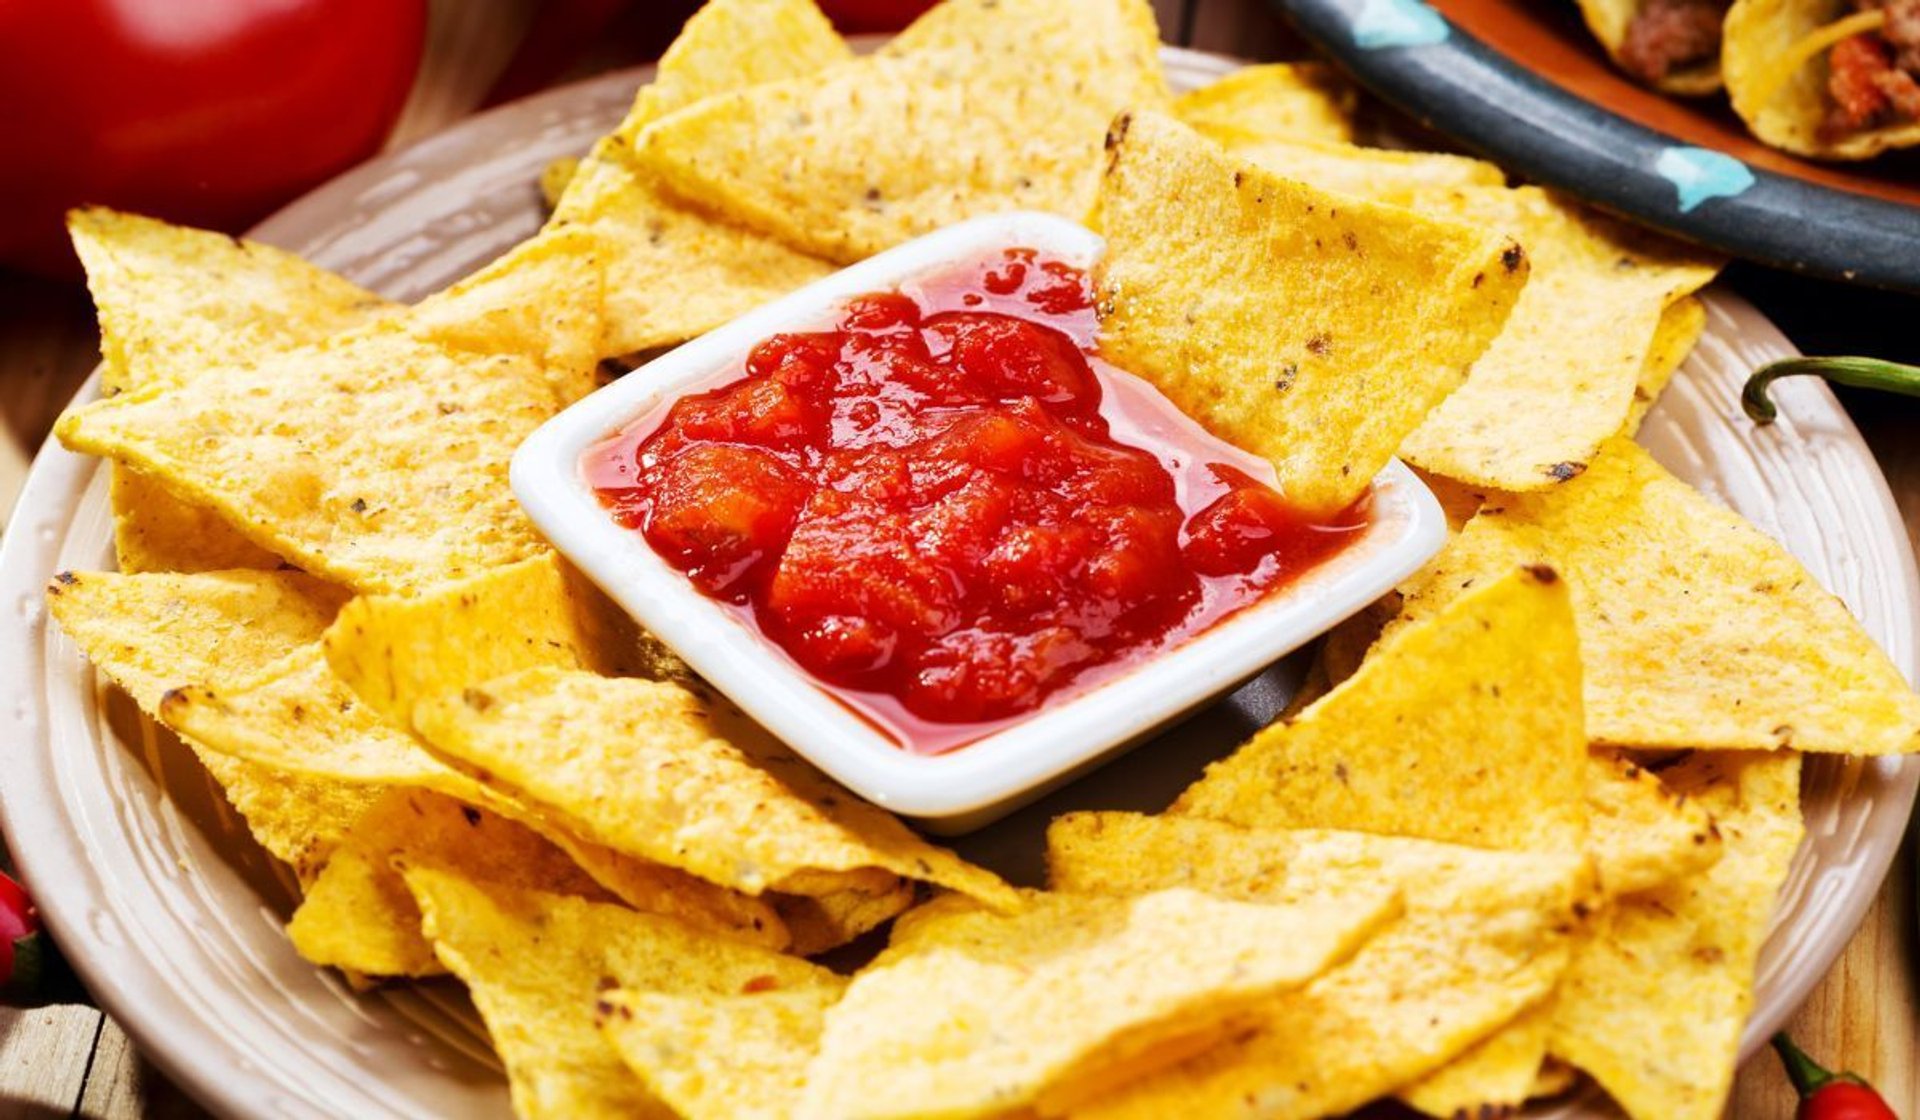 Pikantna salsa do chipsów i nachos. Naturalna, domowa, bije na głowę kupne. Na Mundial jak znalazł